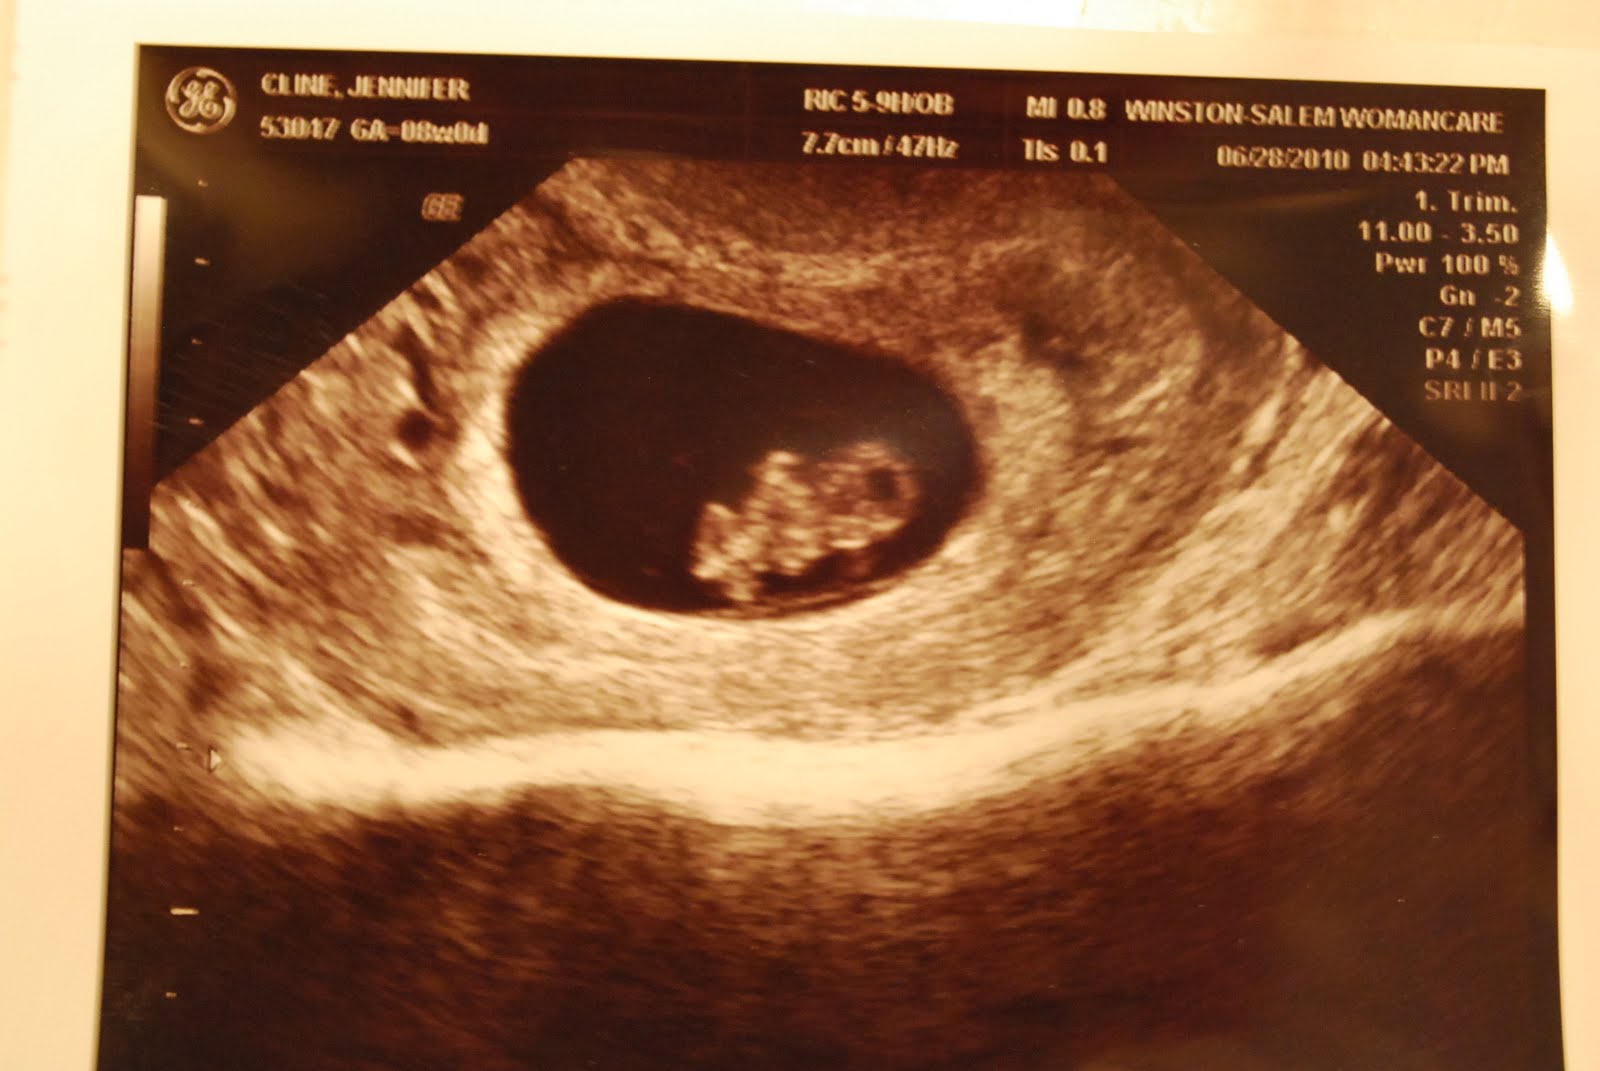 8 й недели неделе. 8 Недель беременности фото плода на УЗИ. Фото УЗИ на 8 неделе беременности акушерской. Снимок УЗИ эмбриона на 8 неделе беременности. УЗИ на 8 неделе беременности акушерской.